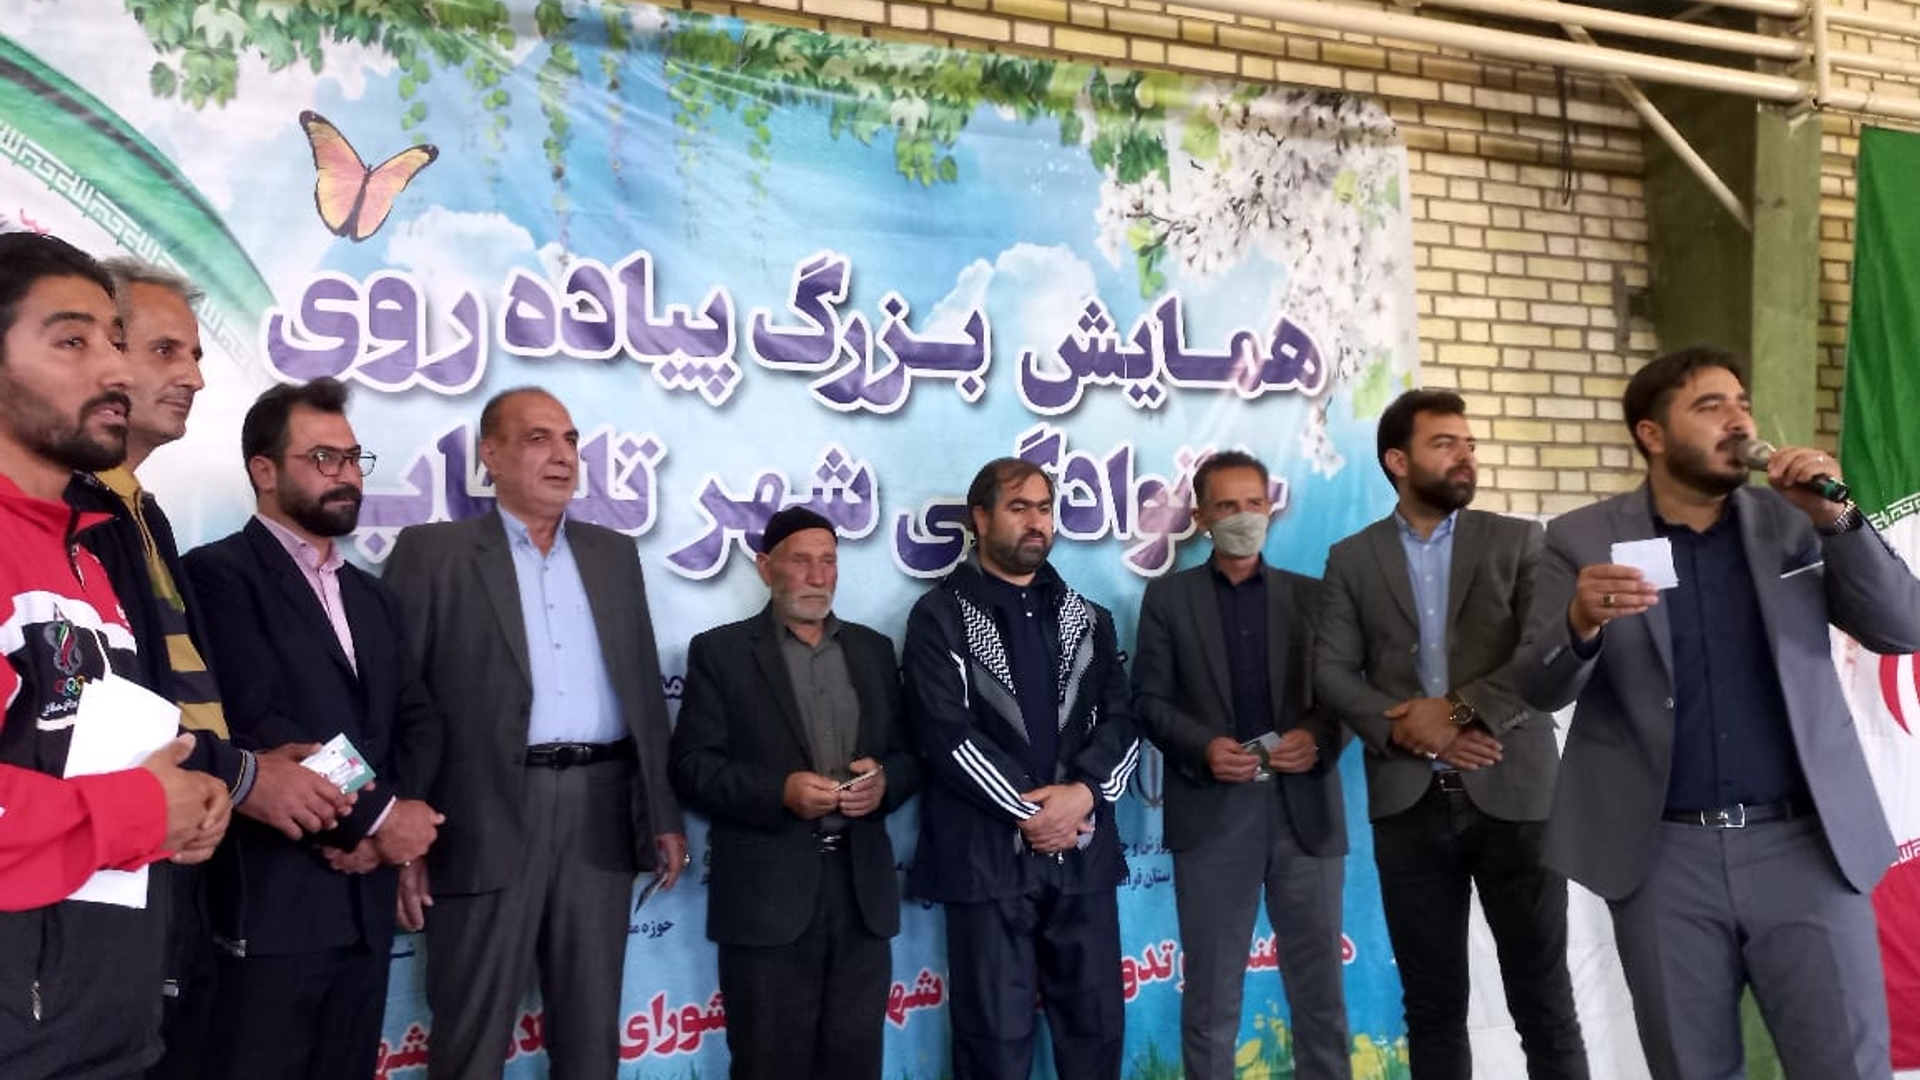 همایش پیاده روی به مناسبت هفنه سلامت وسالروزفتح خرمشهر در شهر تلخاب برگزار گردید